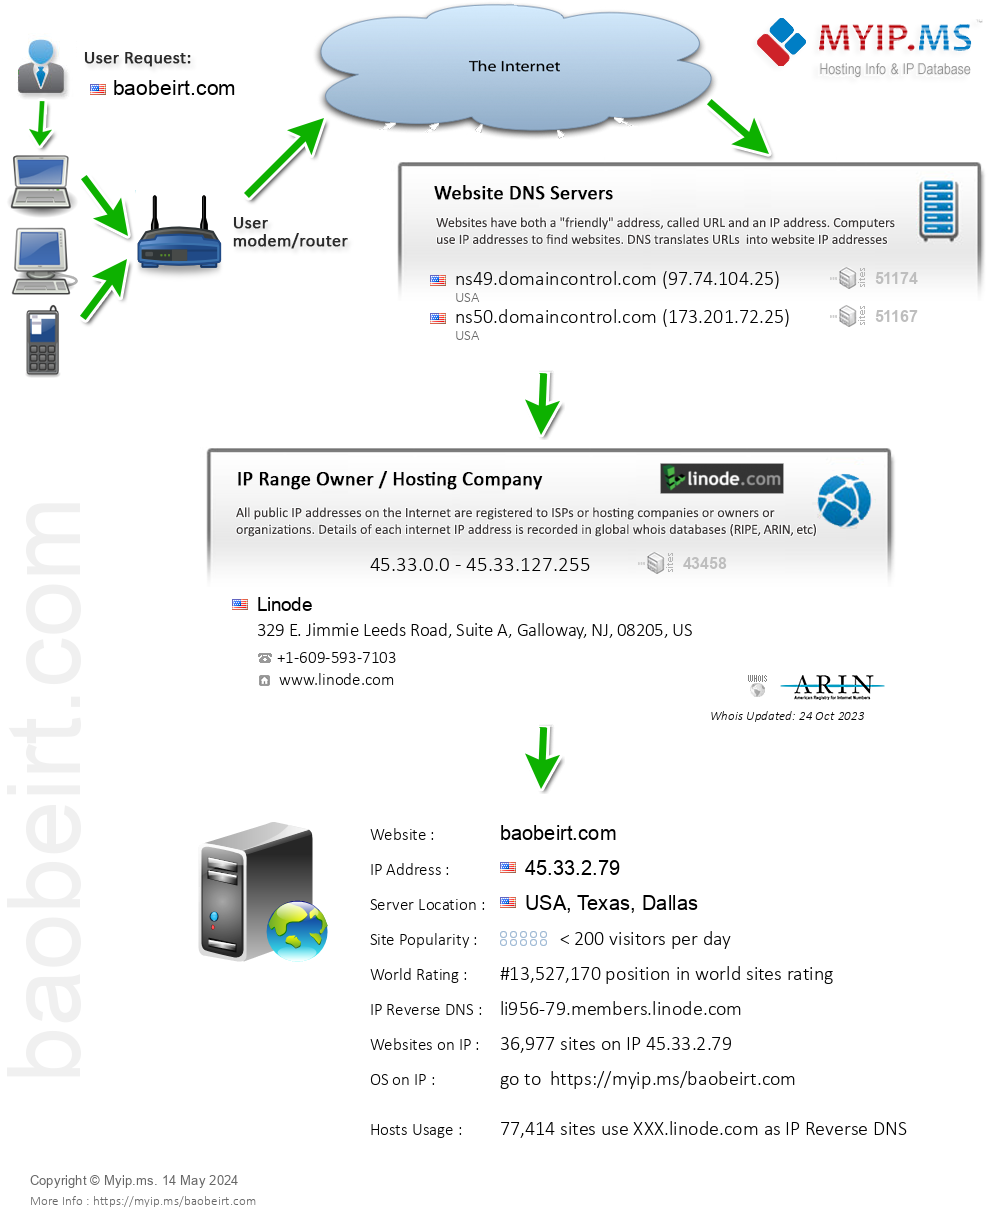 Baobeirt.com - Website Hosting Visual IP Diagram